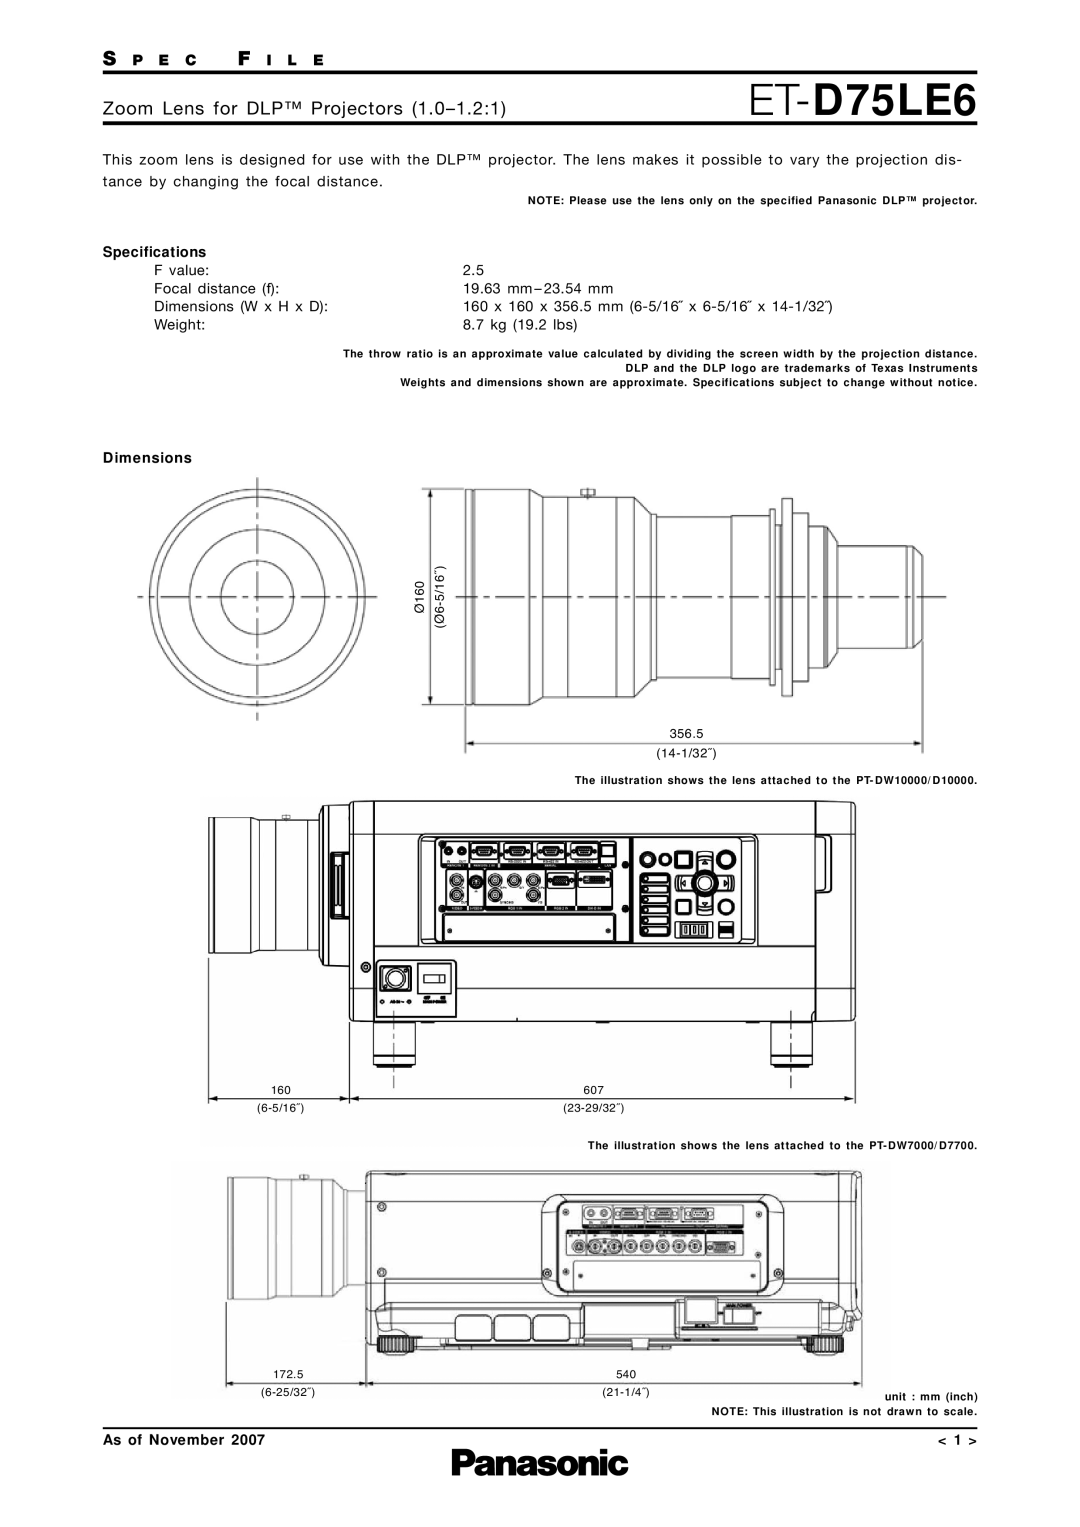 Panasonic ET-D75LE6 specifications Zoom Lens for DLP Projectors, S P E C F I L E, Specifications, Dimensions 